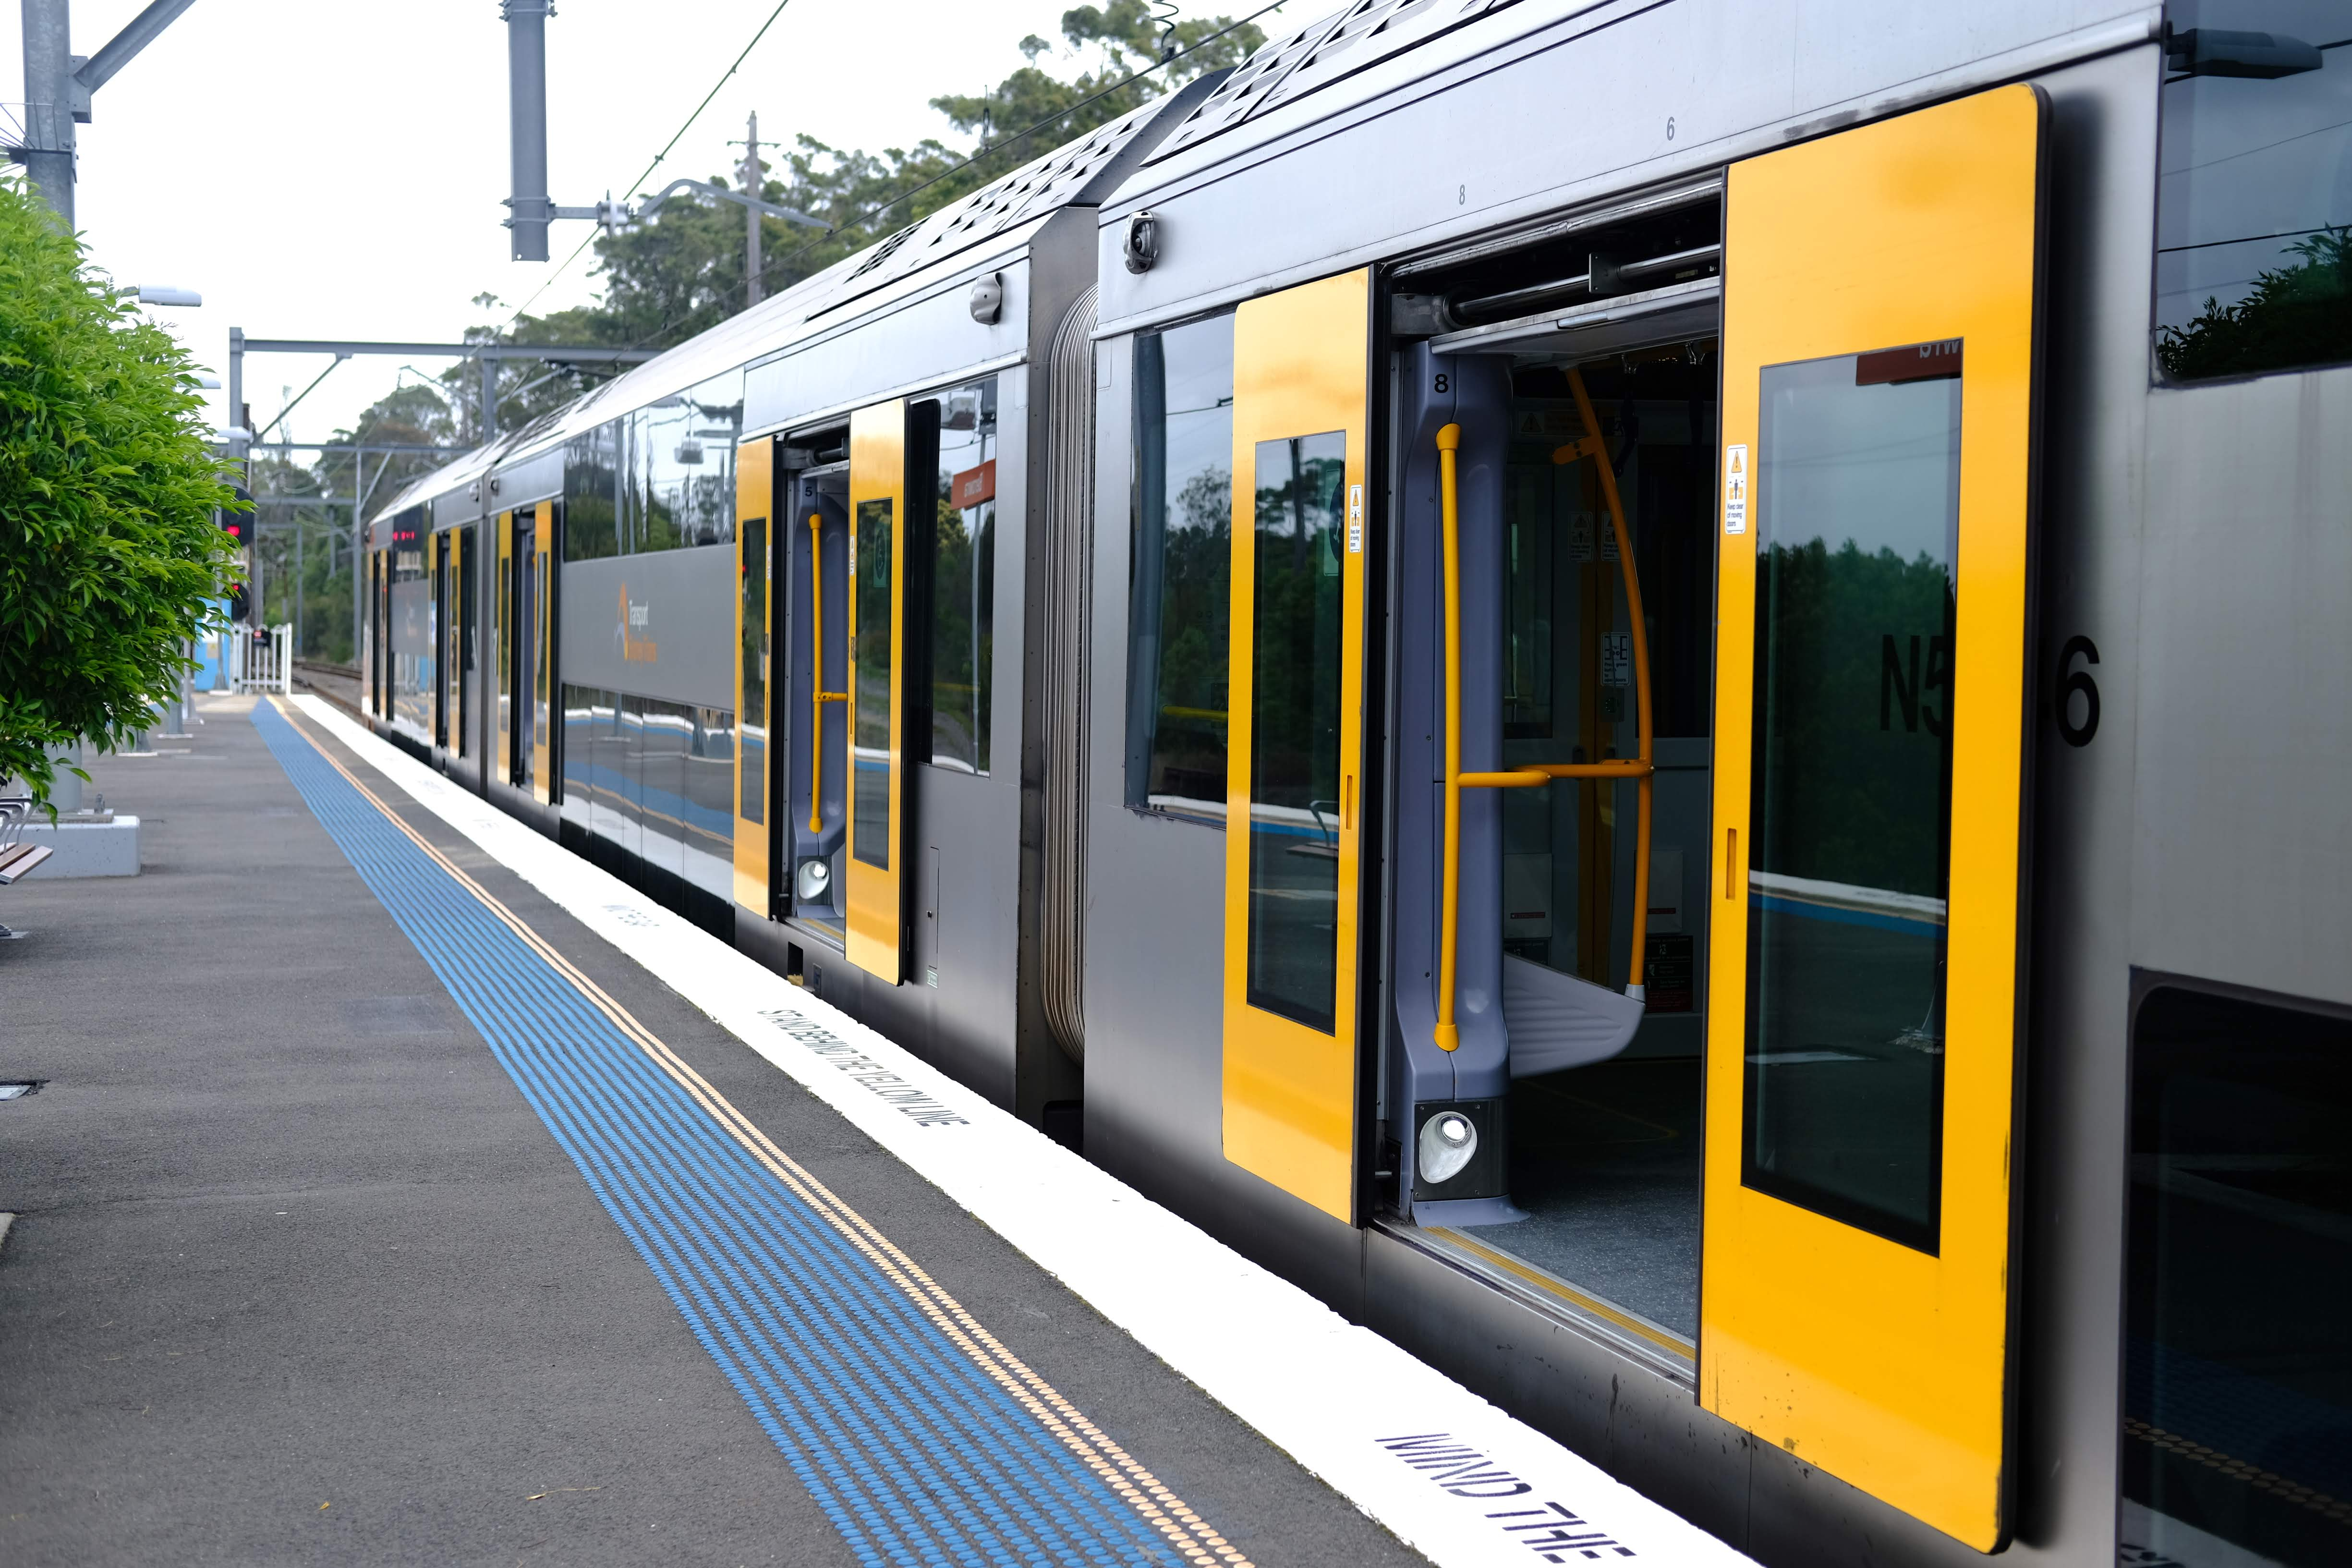 Sydney train at platform